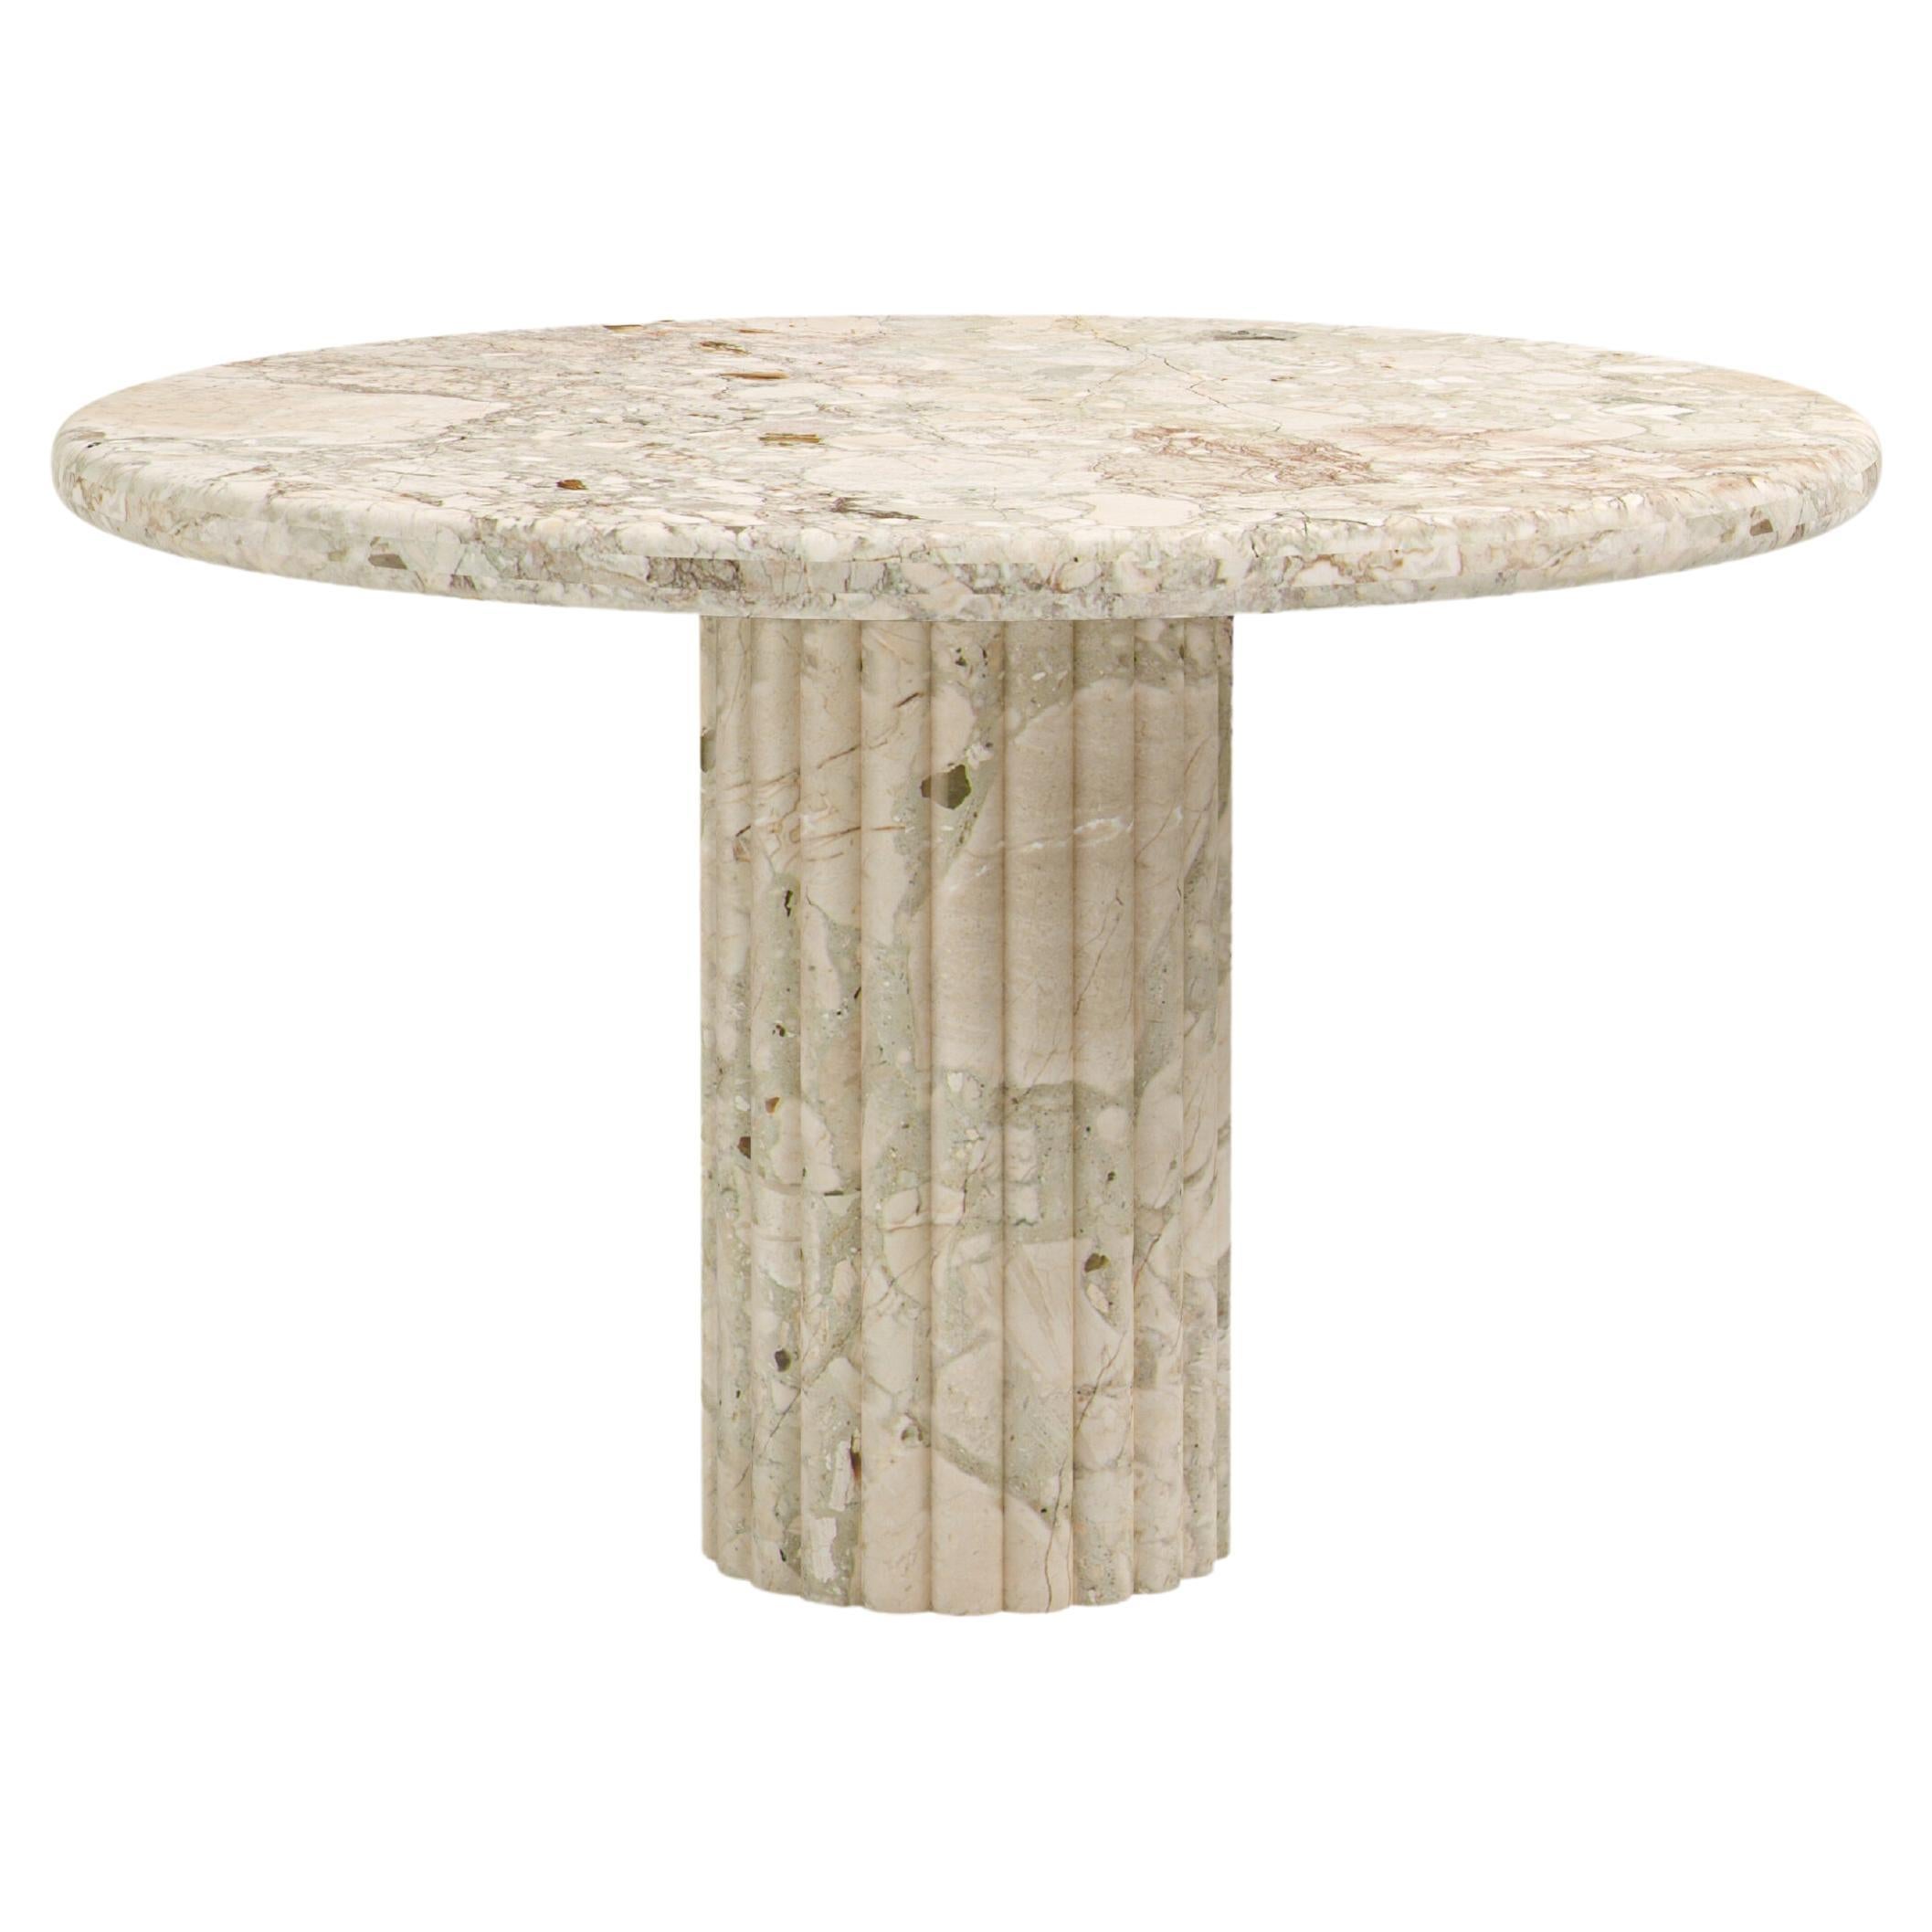 FORM(LA) Fluta Round Dining Table 42”L x 42”W x 30”H Breccia Rosa Marble For Sale